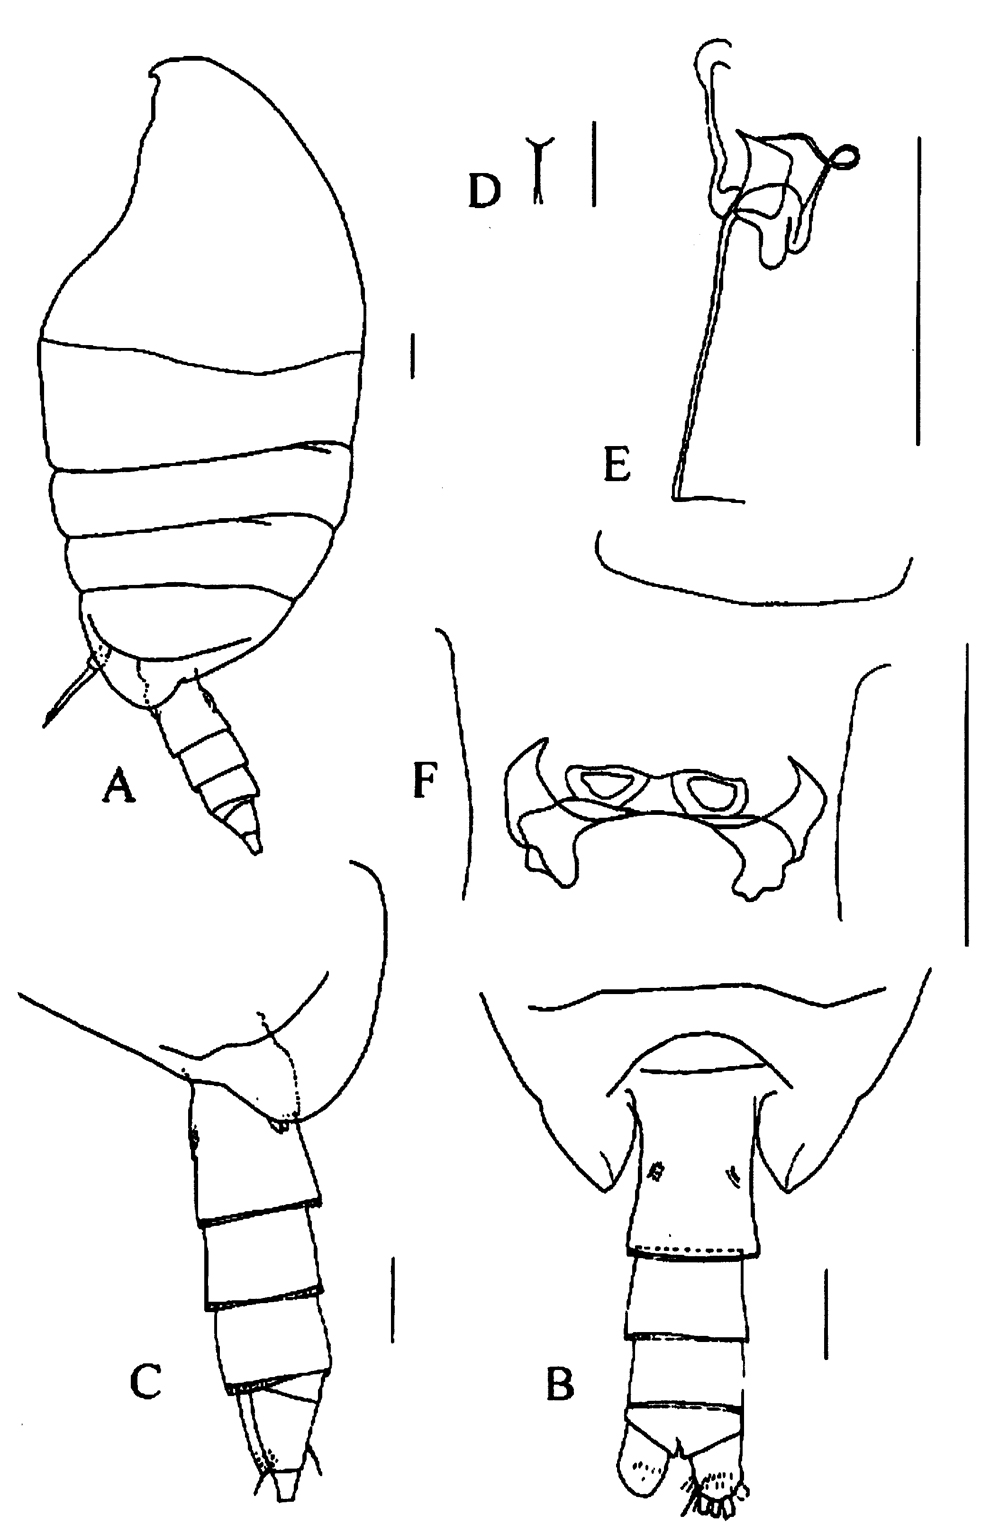 Espce Tharybis juhlae - Planche 1 de figures morphologiques